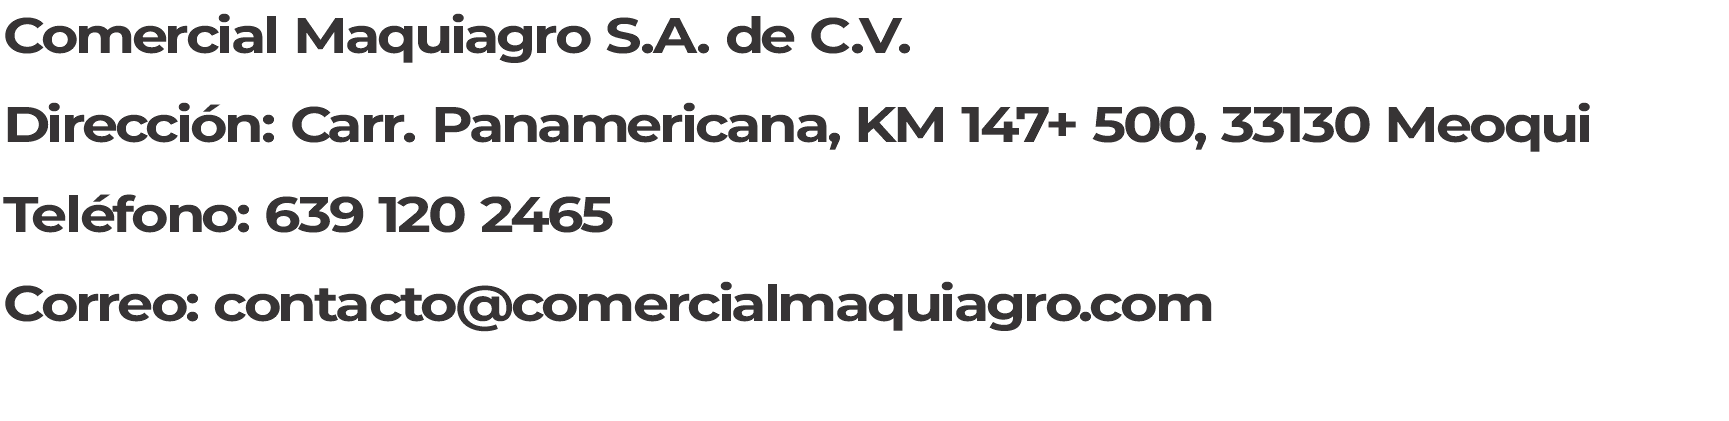 Comercial Maquiagro S.A. de C.V. Dirección: CARRETERA PANAMERICANA, KM 147+ 500, 33130 Meoqui Teléfono: 639 120 2465 Correo: contacto@comercialmaquiagro.com 